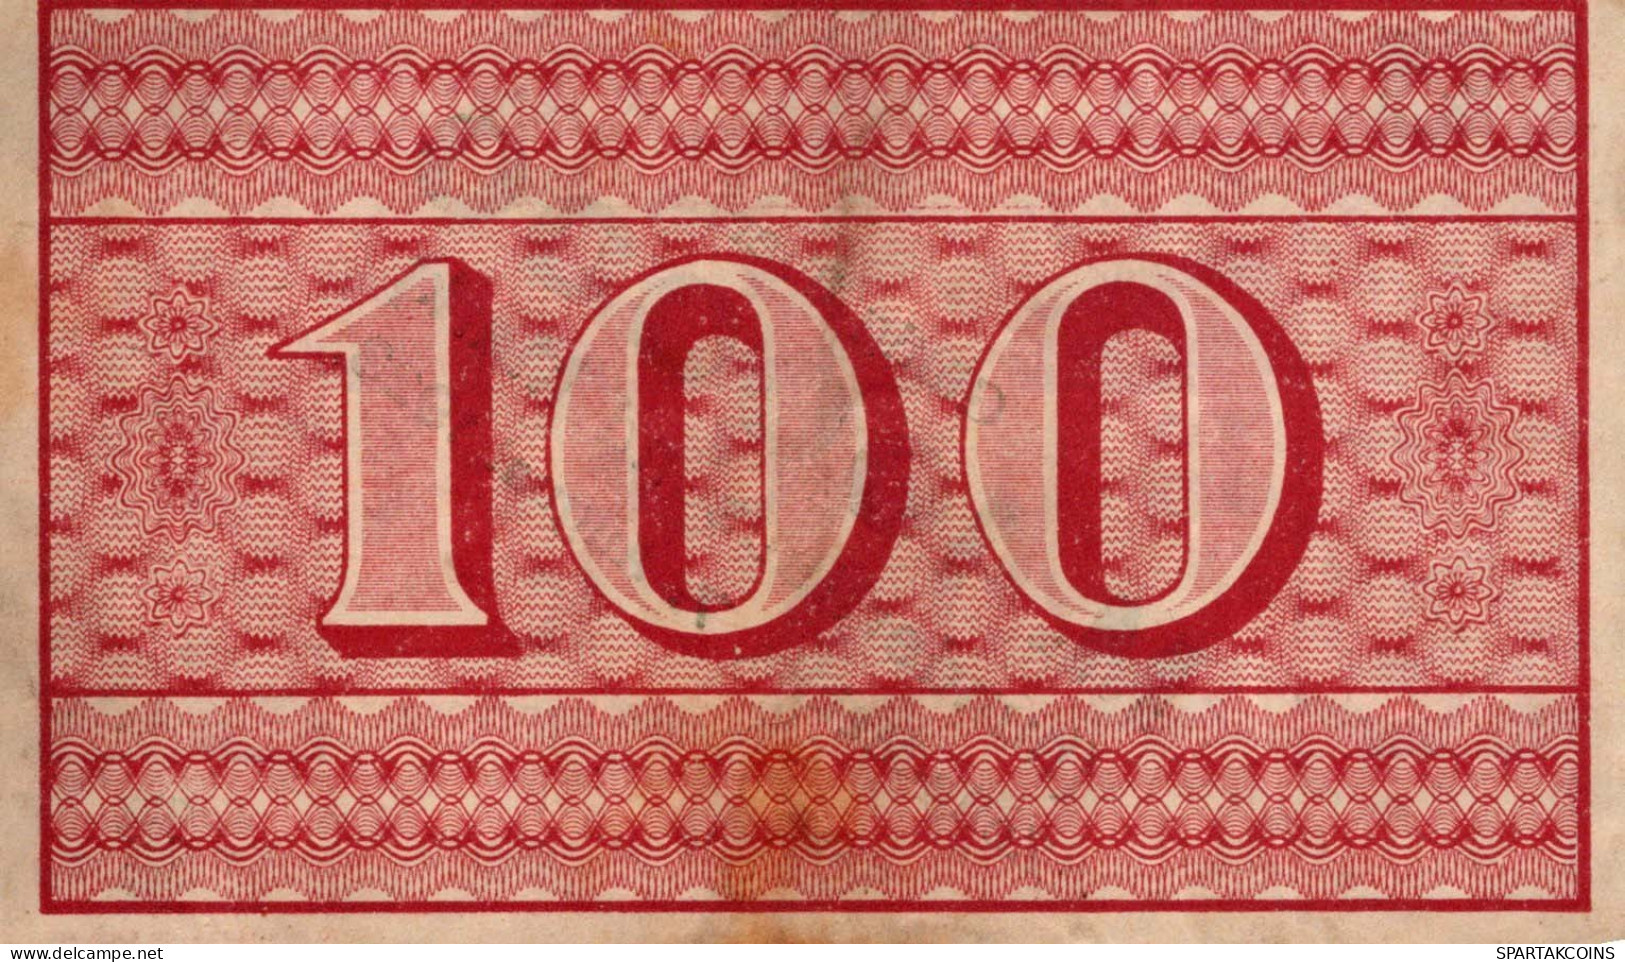 100 MARK 1922 Stadt ZELLA-MEHLIS Thuringia DEUTSCHLAND Notgeld Papiergeld Banknote #PK856 - [11] Emisiones Locales